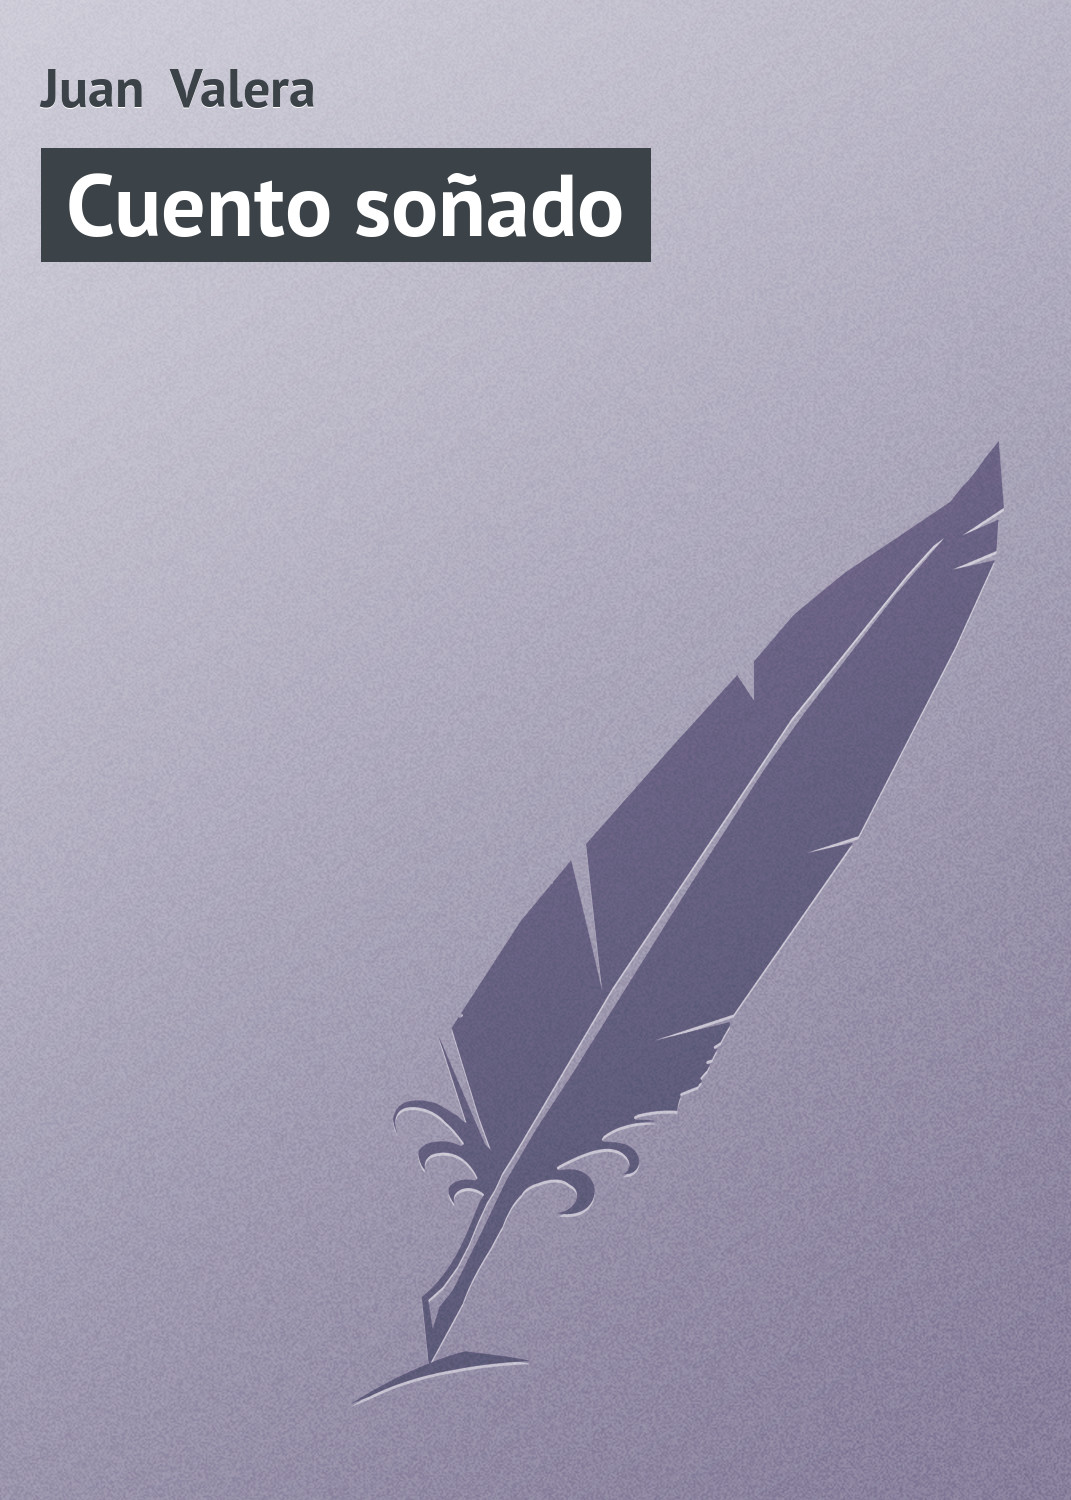 Книга Cuento soñado из серии , созданная Juan Valera, может относится к жанру Зарубежная старинная литература, Зарубежная классика. Стоимость электронной книги Cuento soñado с идентификатором 21107870 составляет 5.99 руб.